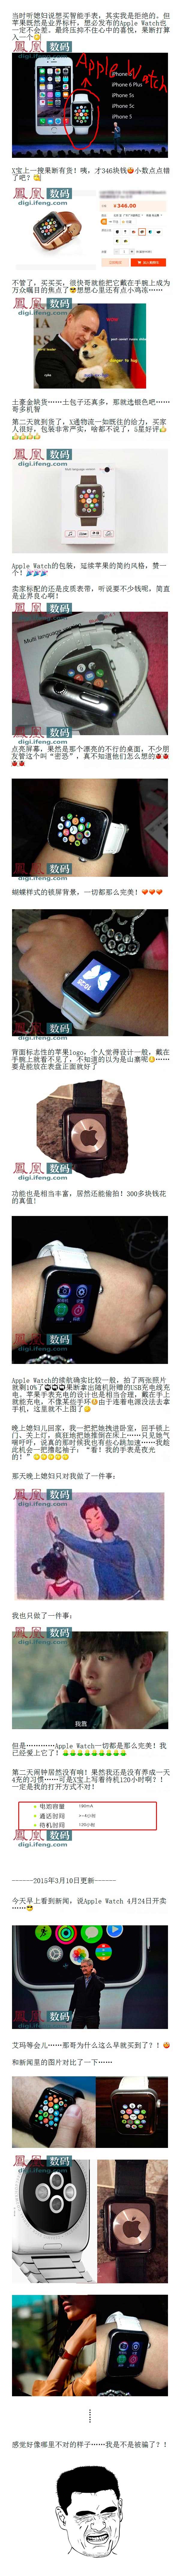 山寨版Apple Watch已上市开卖 不同颜色和腕带可供选择(图)